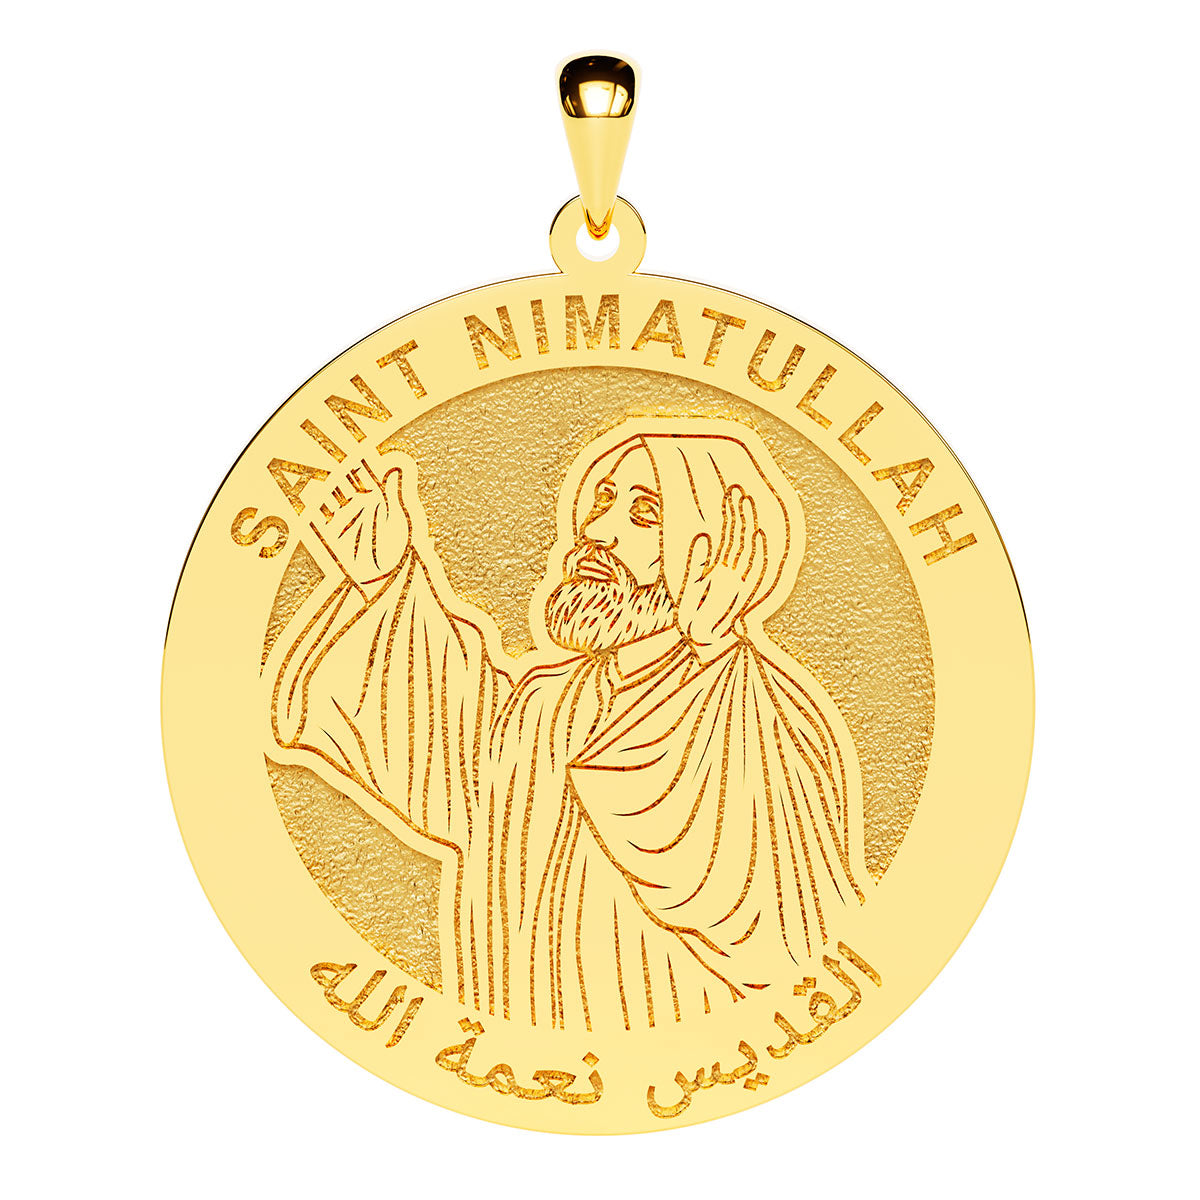 Saint Nimatullah Kassab Al-Hardini Arabic Round Religious Medal